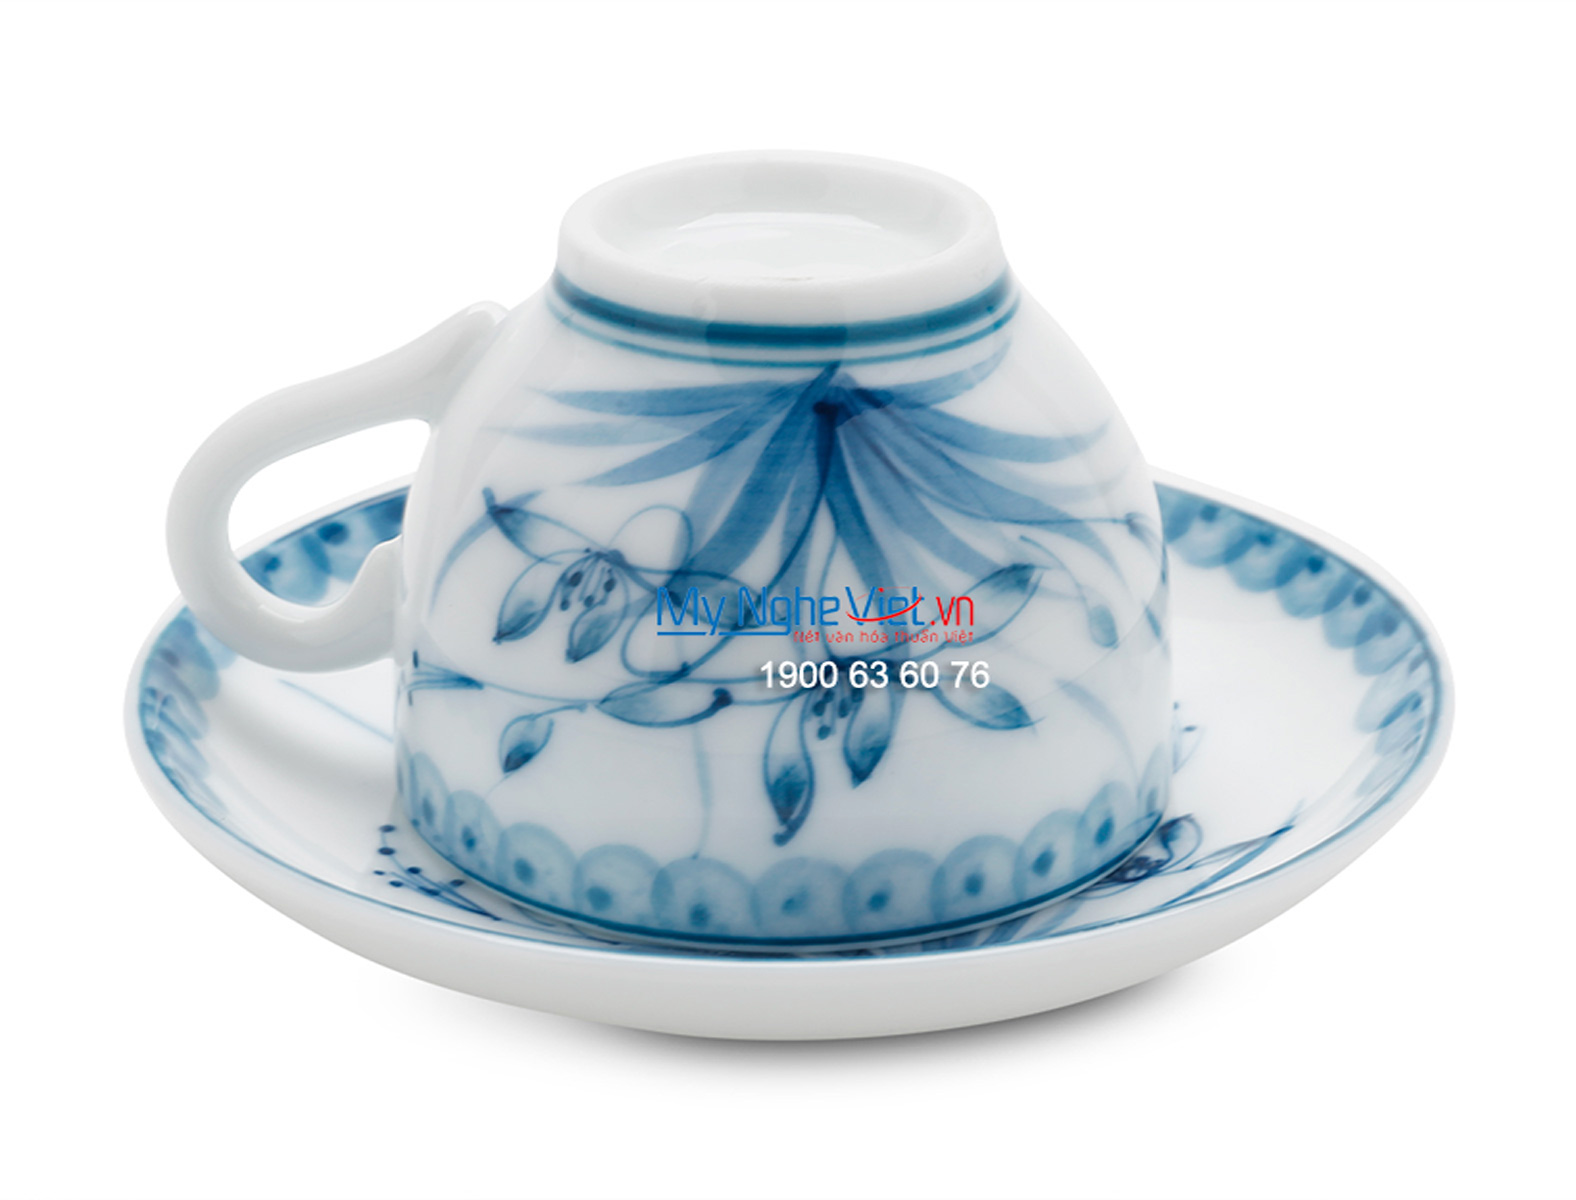 Bộ bình trà men trắng vẽ hoa xanh lam MNV-TS473